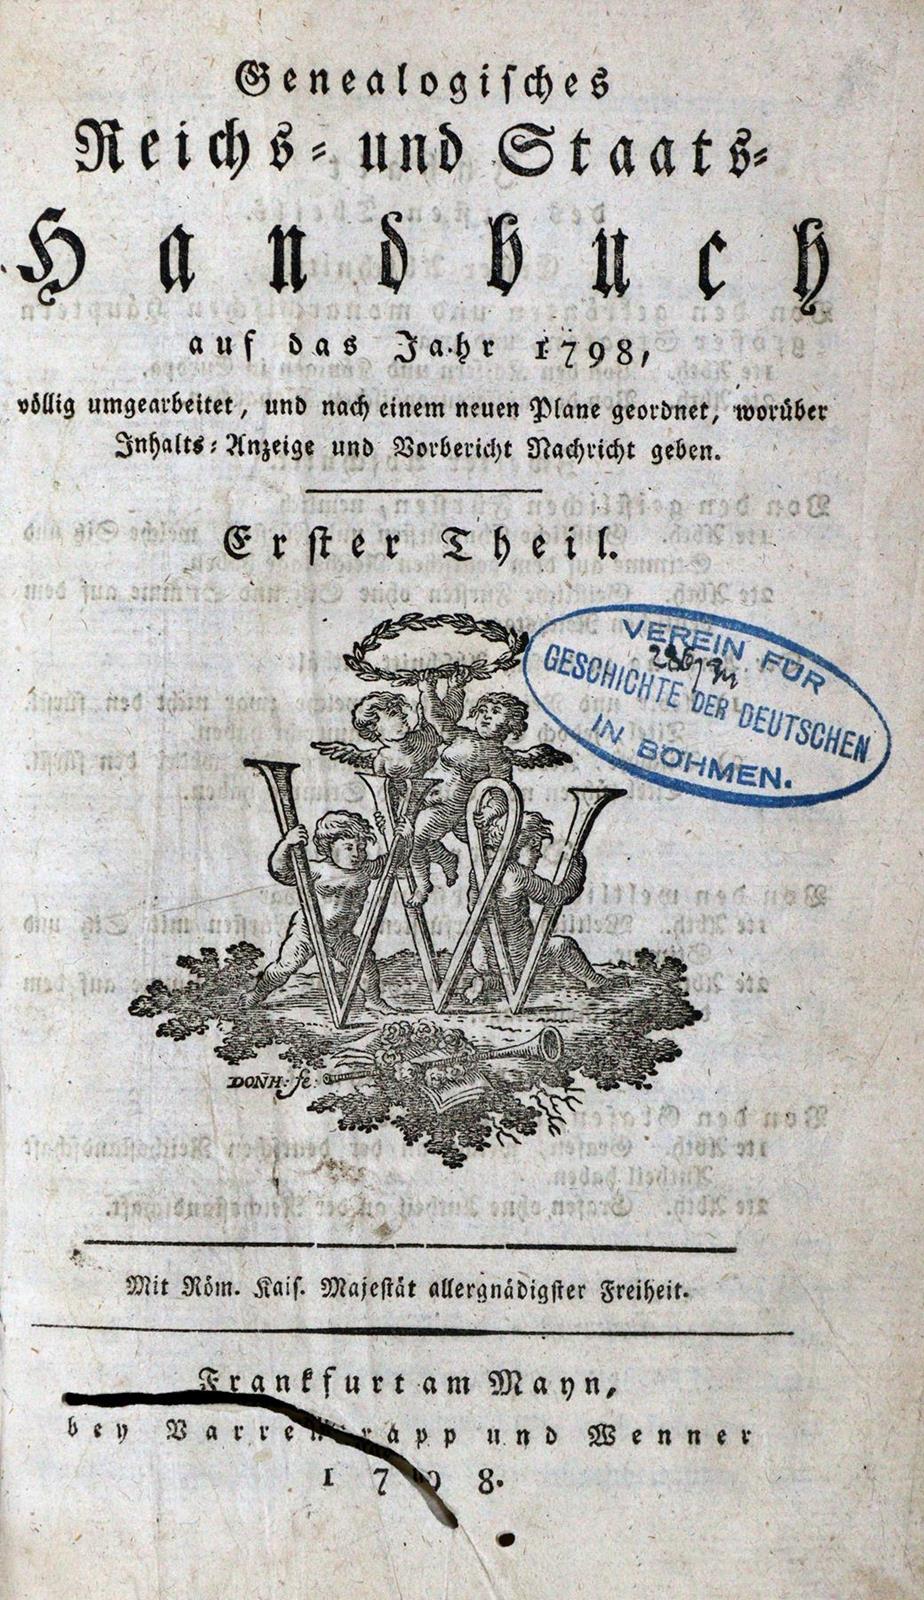 Genealogisches Reichs- und Staats-Handbuch | Bild Nr.1